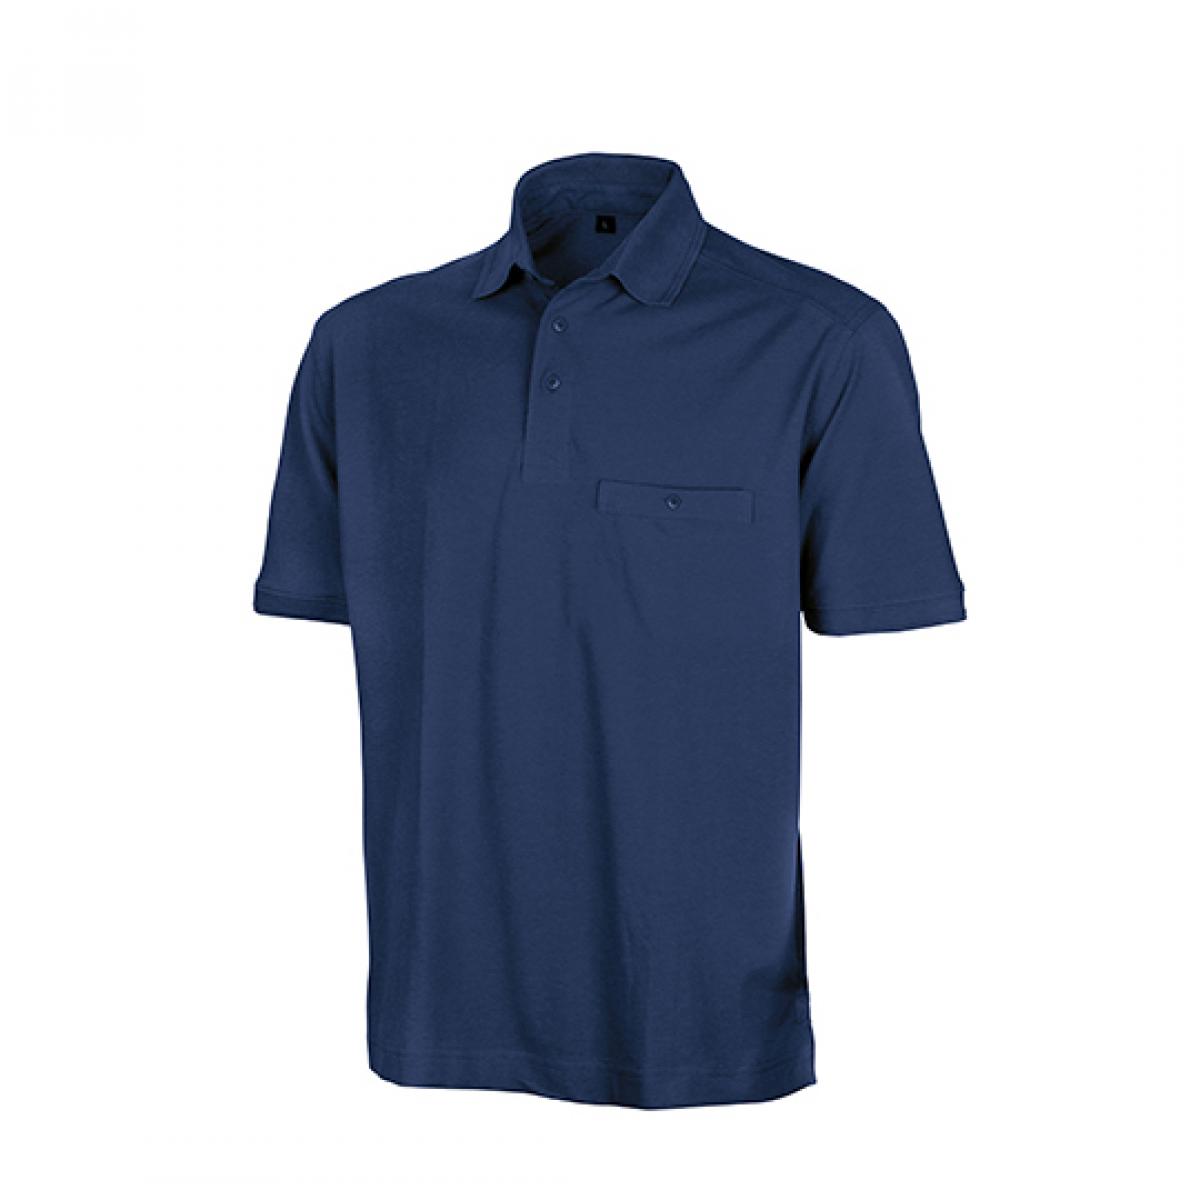 Hersteller: Result WORK-GUARD Herstellernummer: R312X Artikelbezeichnung: Herren Apex Polo Shirt / Strapazierfähig aus Mischgewebe Farbe: Navy